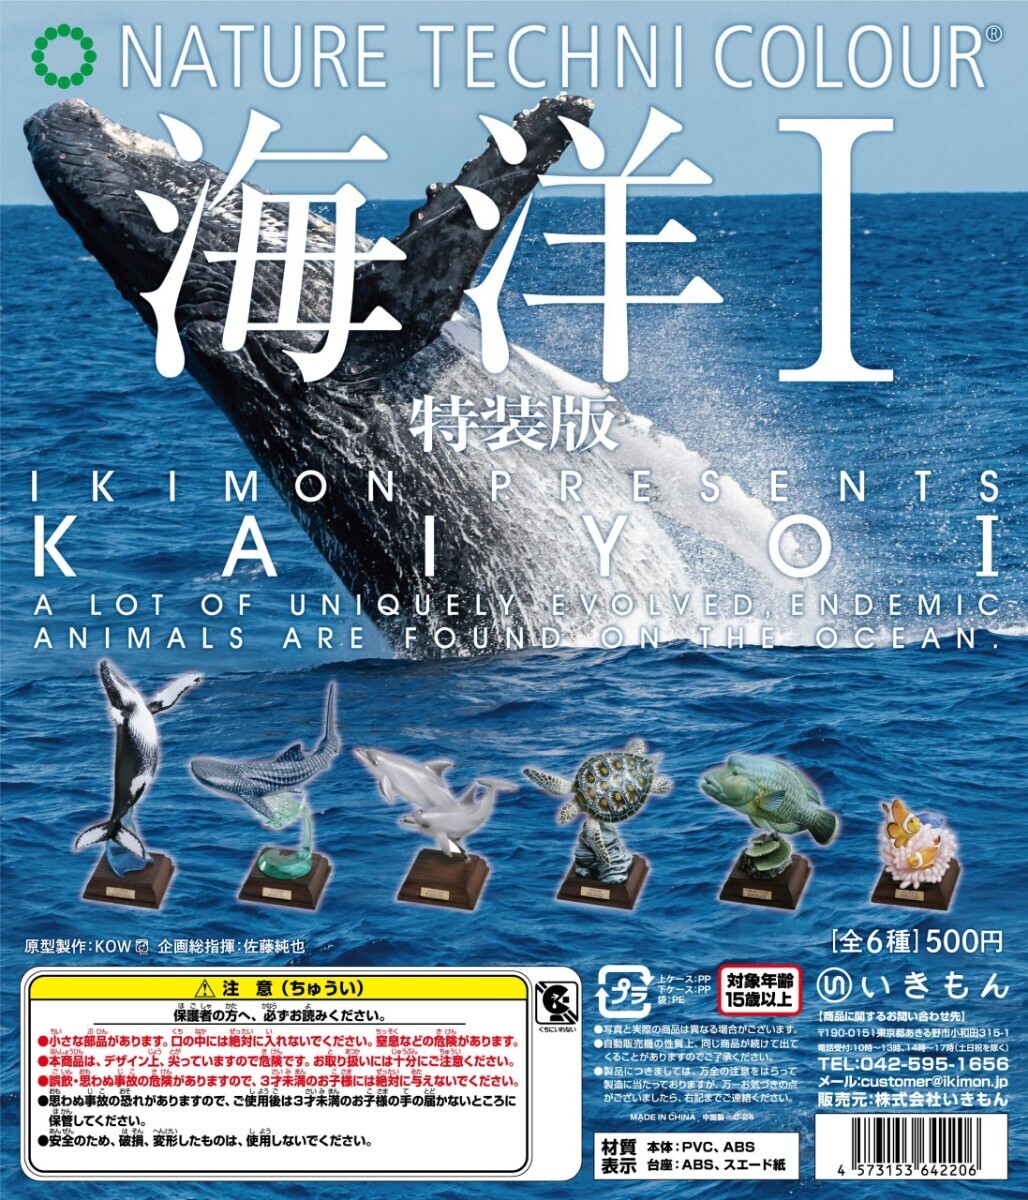 ネイチャーテクニカラー 海洋Ⅰ 特装版 ザトウクジラ クジラ くじら 鯨 哺乳類 動物 生物 フィギュア いきもん 新品未開封の画像4